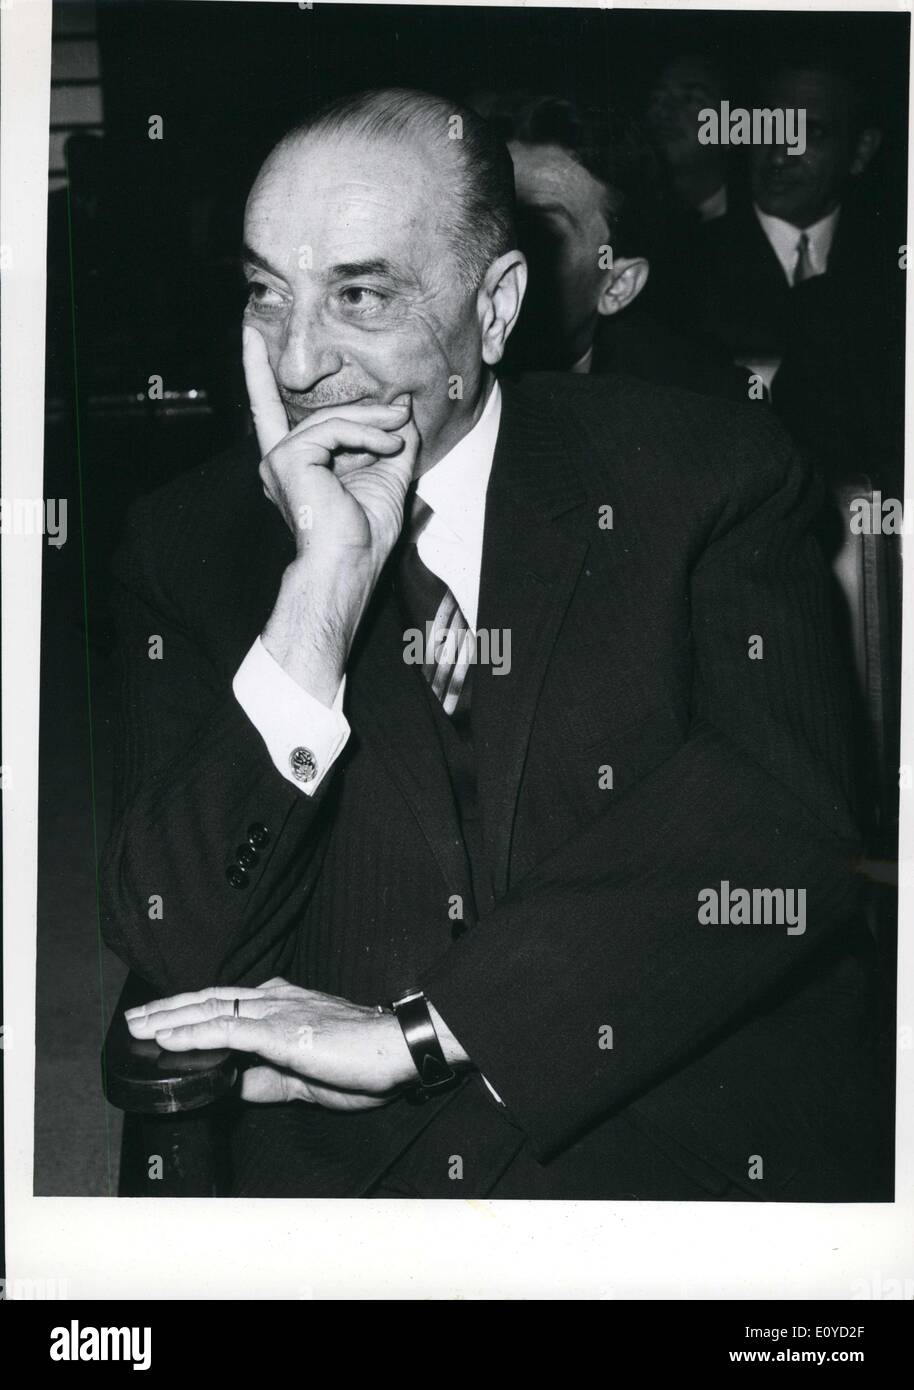 22. November 1969 - kann Jordan The Premier Mr Bahjat Talhouoni Beantwortung der Abgeordneten mit Adresse nach dem gewann er eine Stimme des Vertrauens in die Premier-Schrank, auf der Grundlage der Rede vom Thron, die als die Regierungserklärung galt. Stockfoto